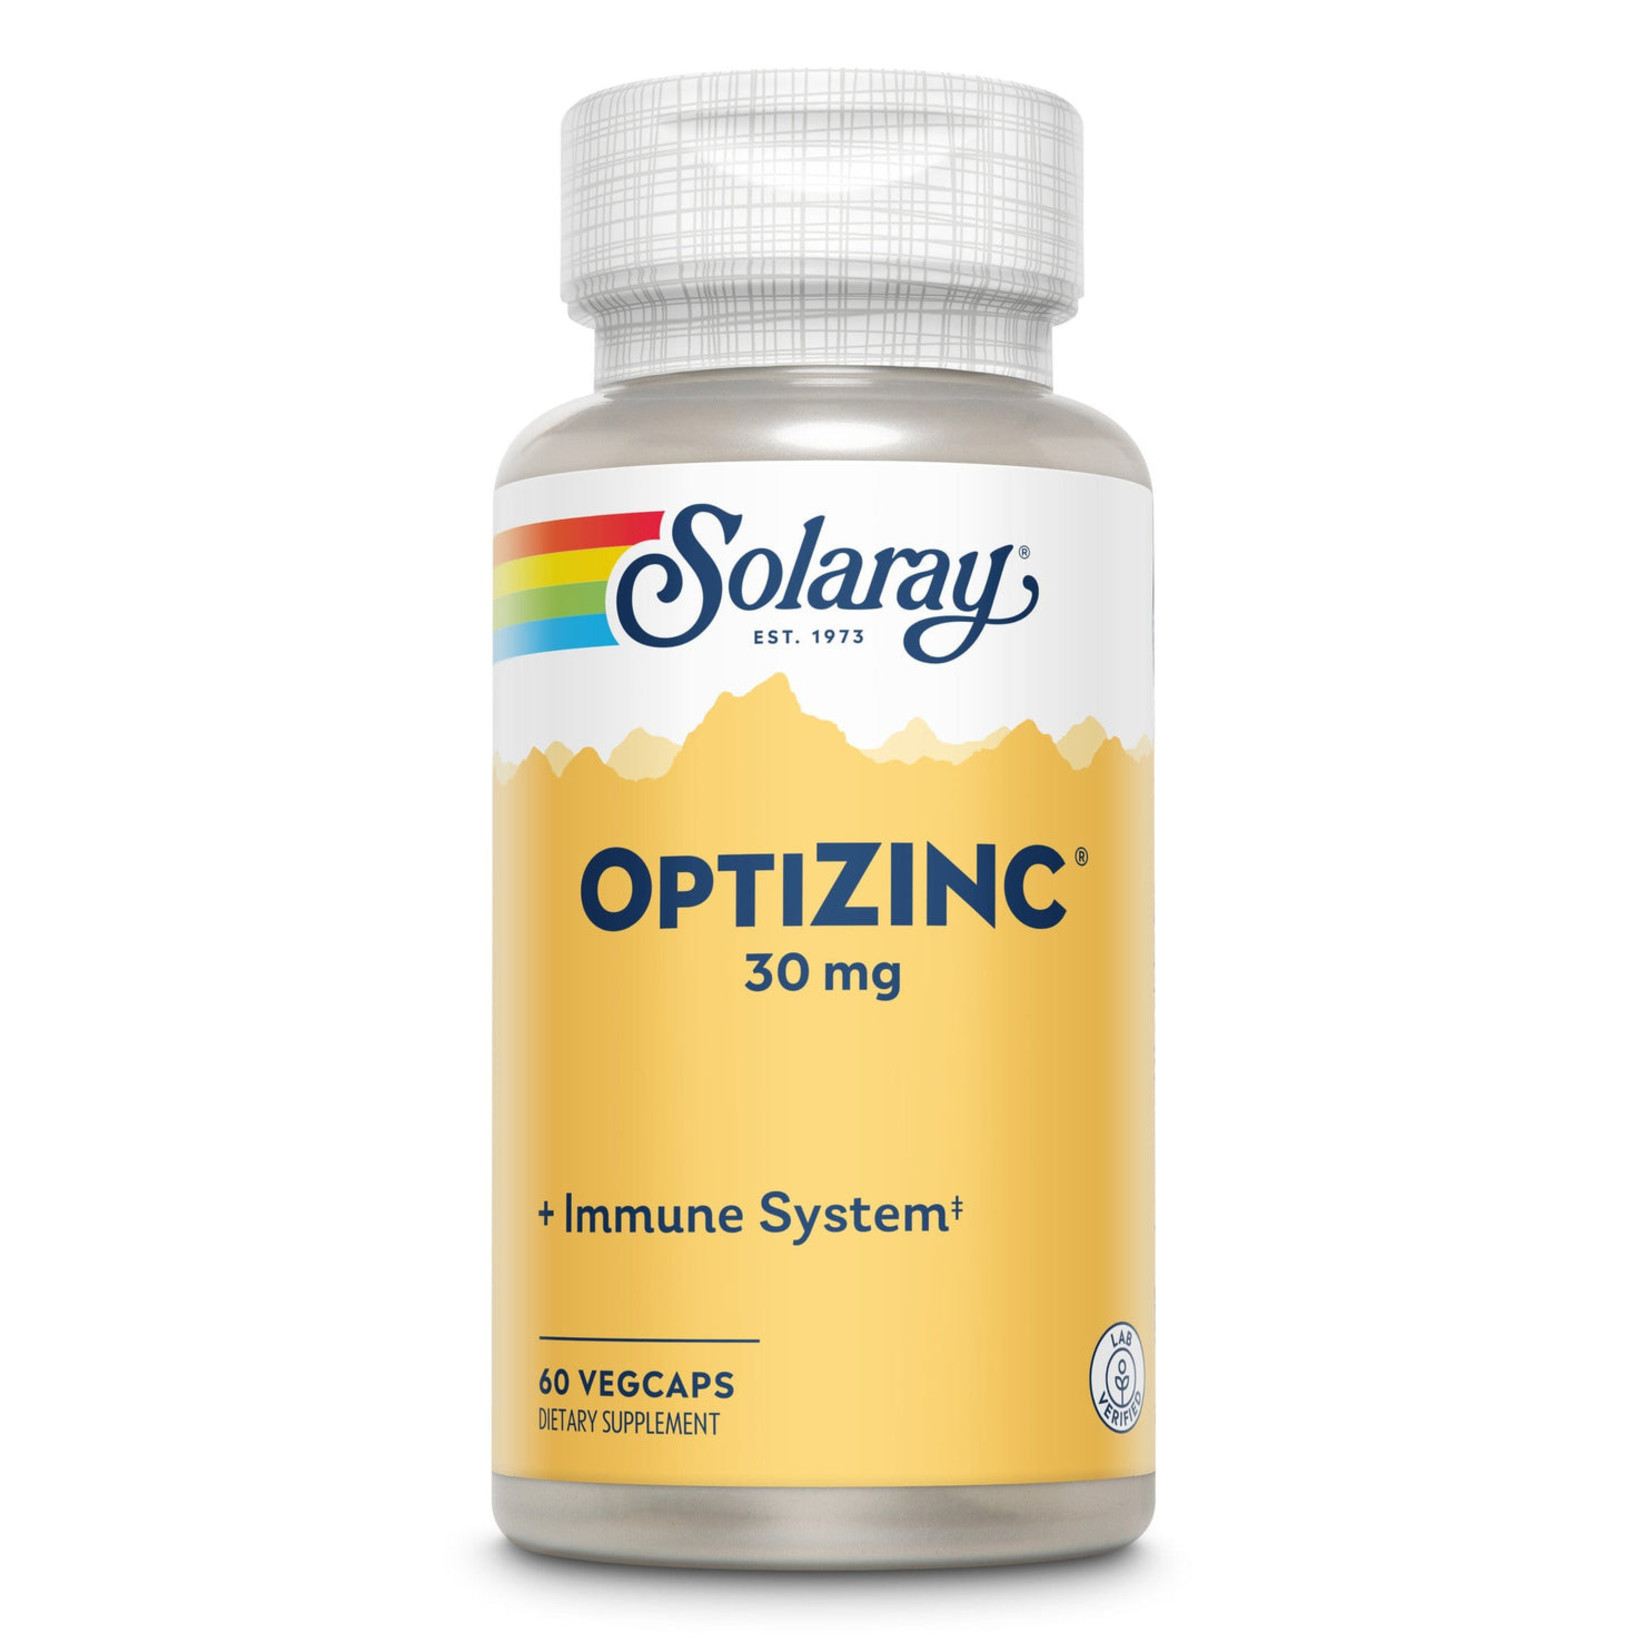 Solaray Solaray - Optizinc 30 mg - 60 count